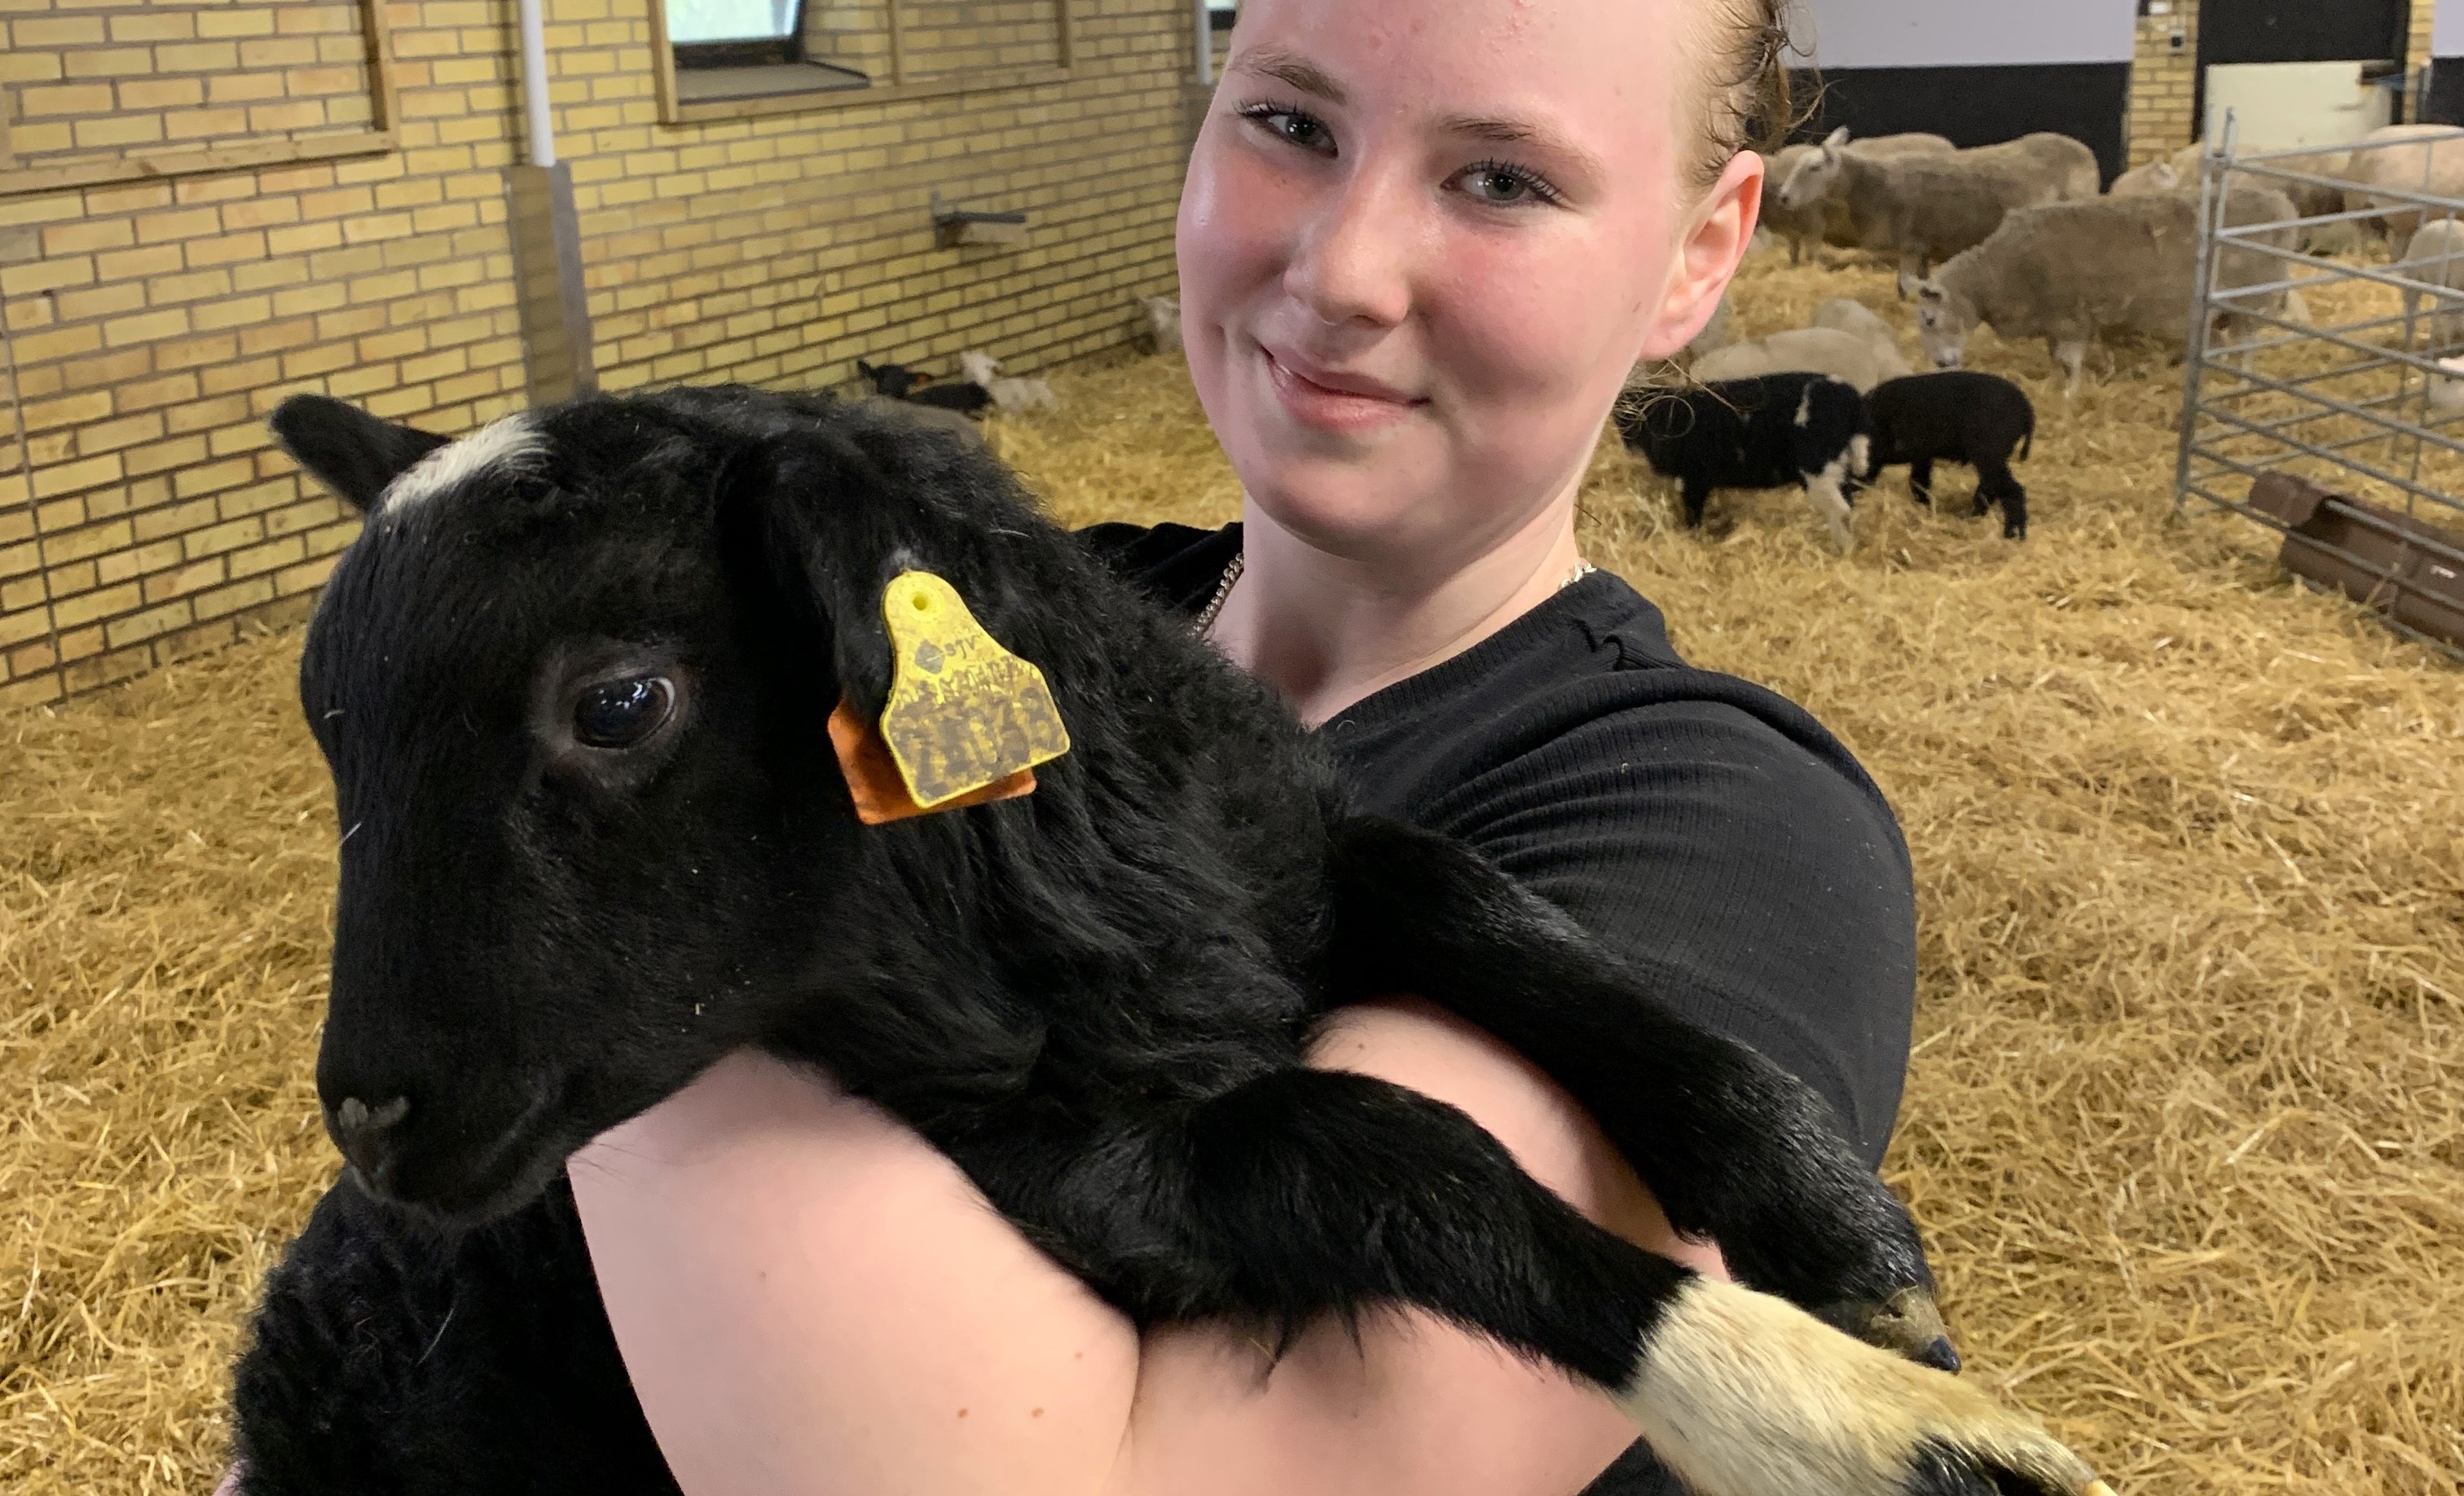 Alva Nilsson, elev på Naturbruksprogrammet inriktning lantbruk, ha varit med i skolans lamningsjour och tycker att det har varit en fantastisk upplevelse. Foto: Åsa Meierkord